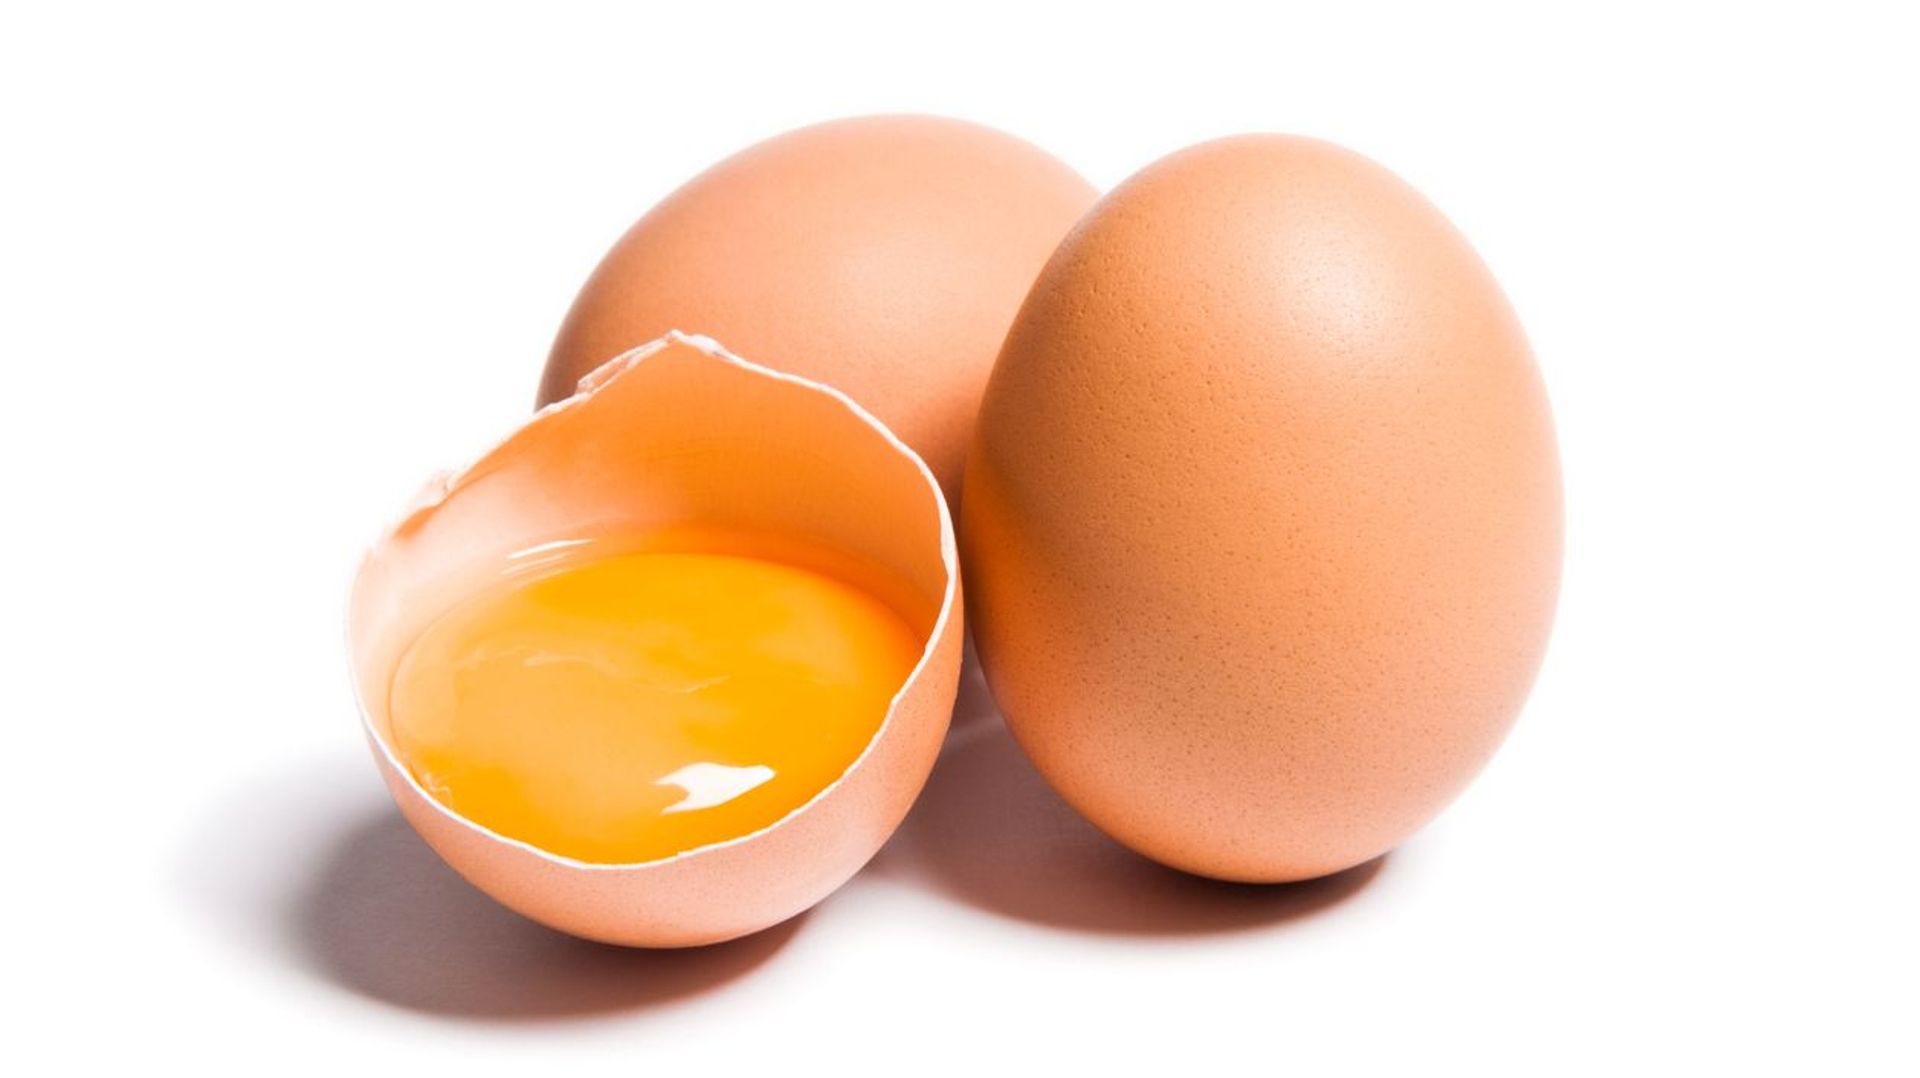 Les bons plans de Marcelline pour utiliser les jaunes d’œufs